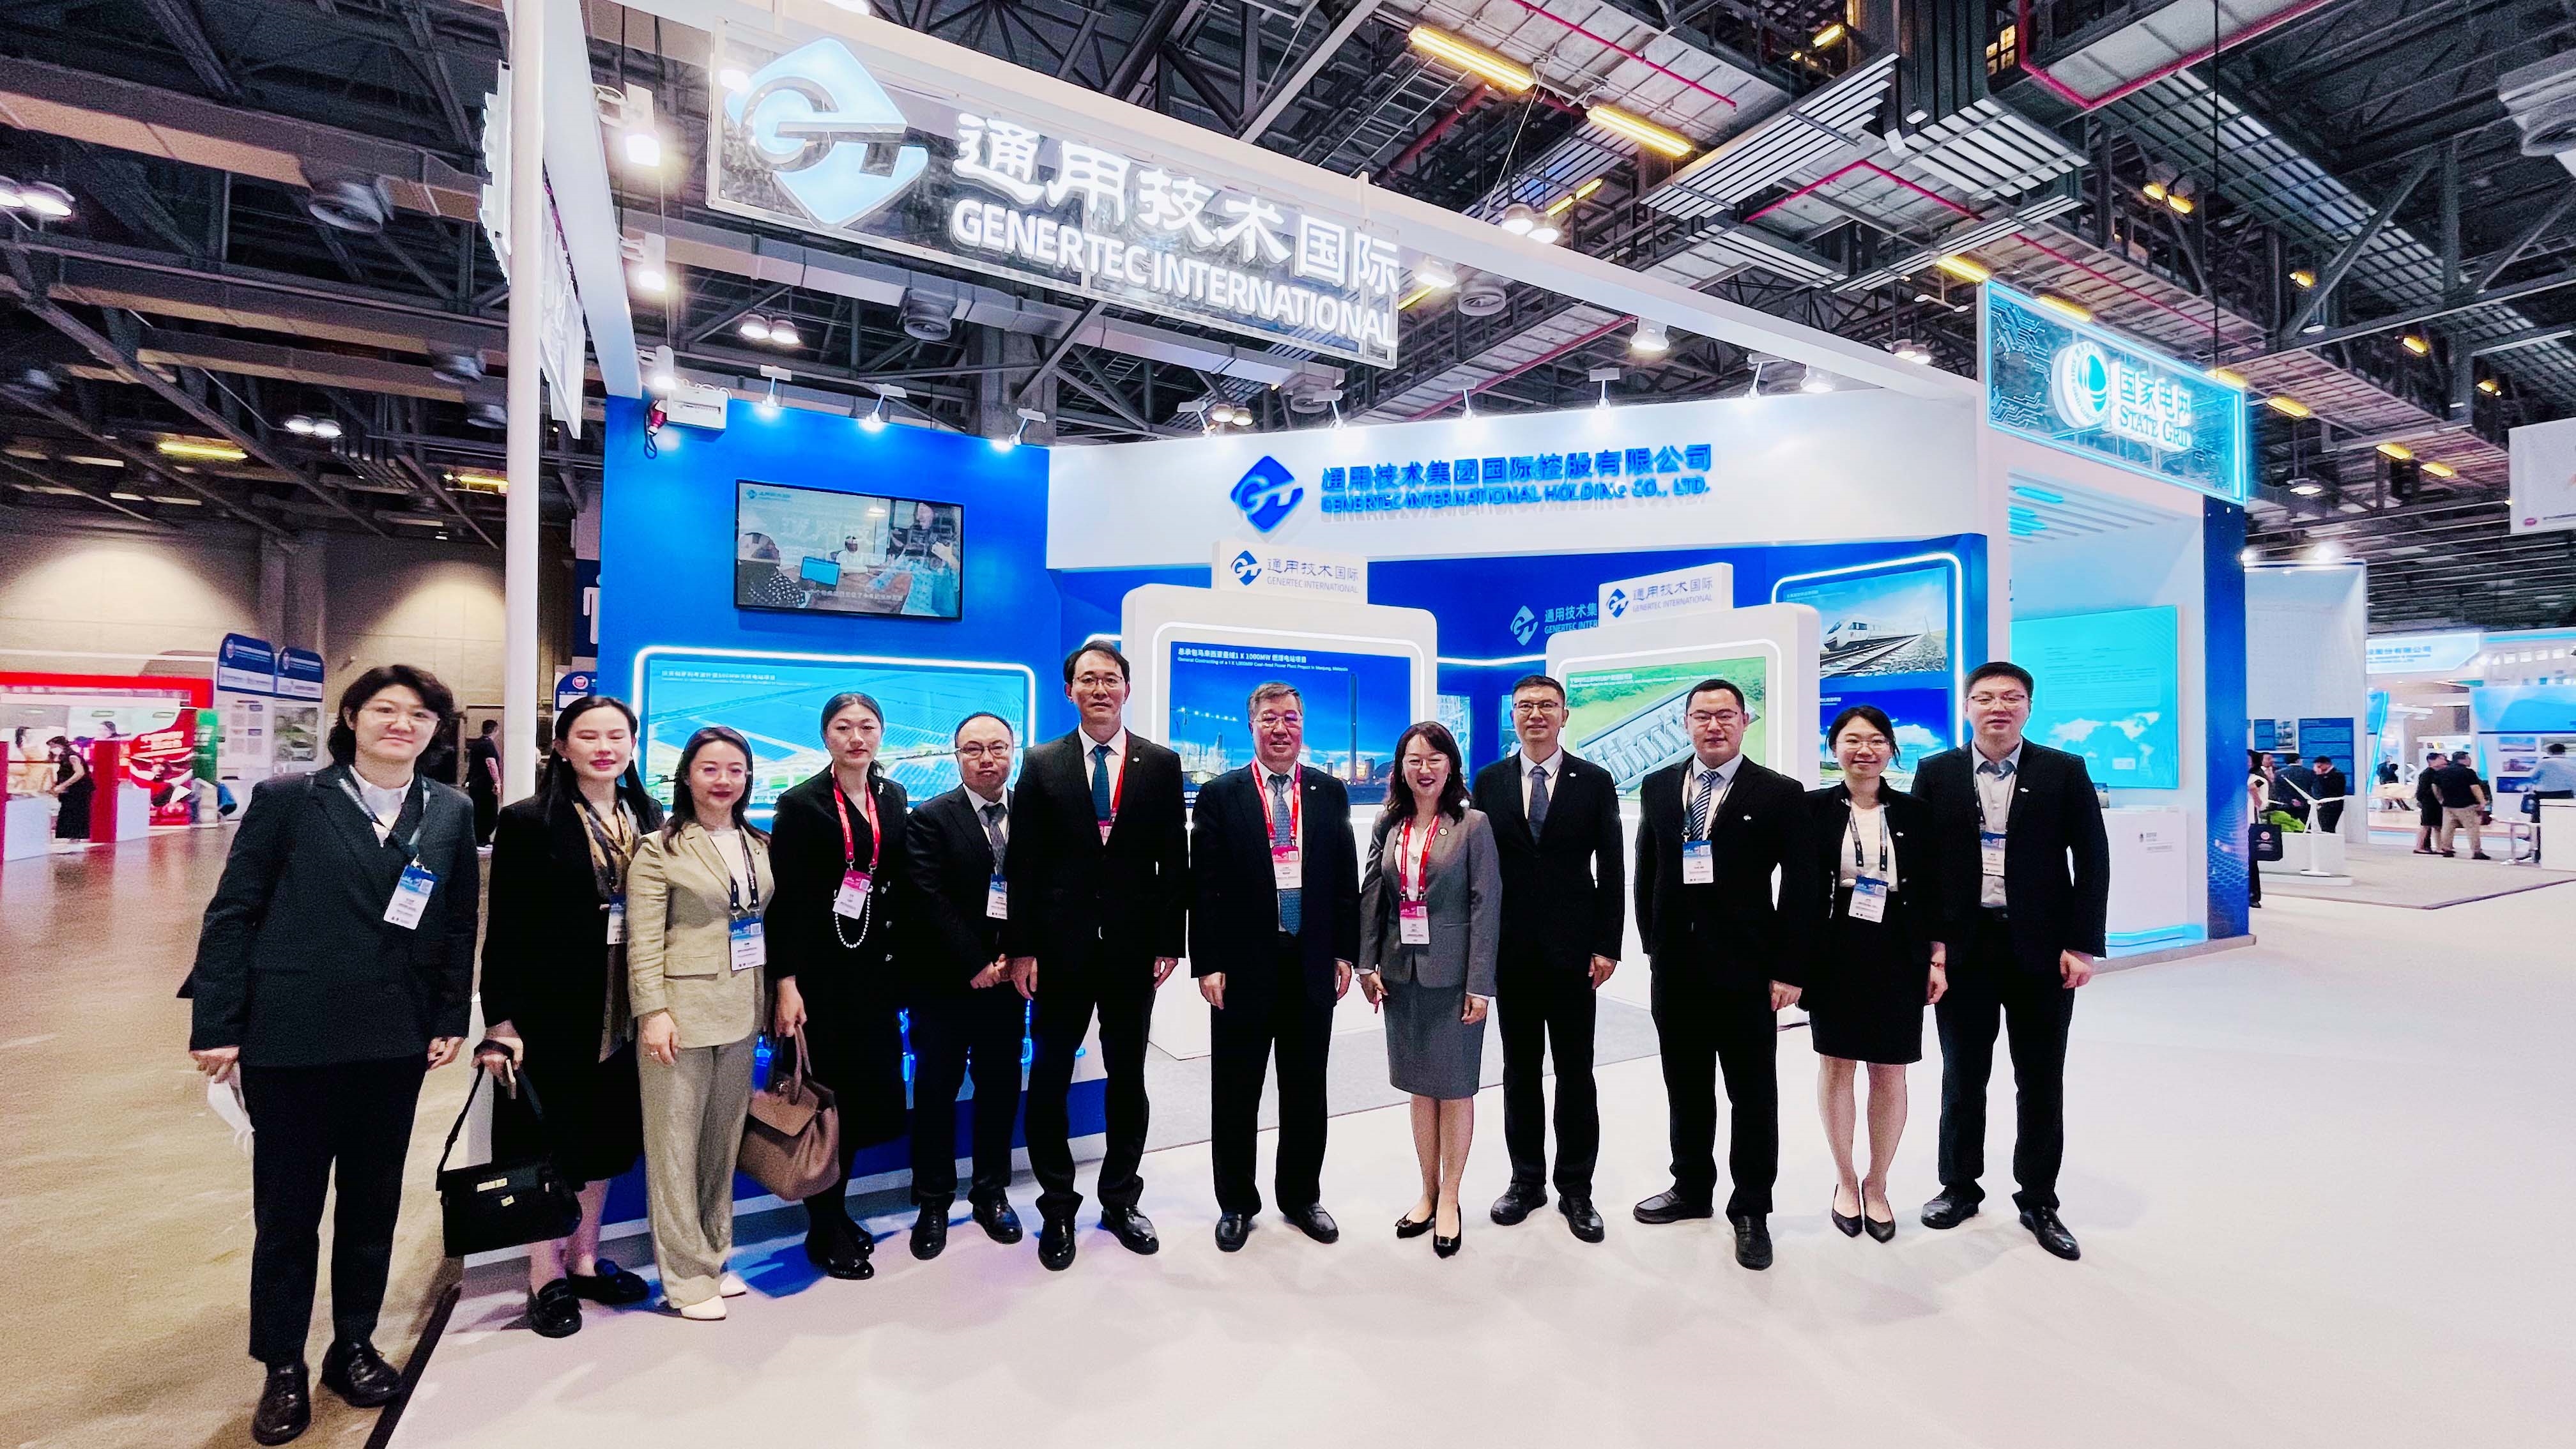 刘旭陪同集团、国际公司领导出席中国对外承包工程商会系列活动 